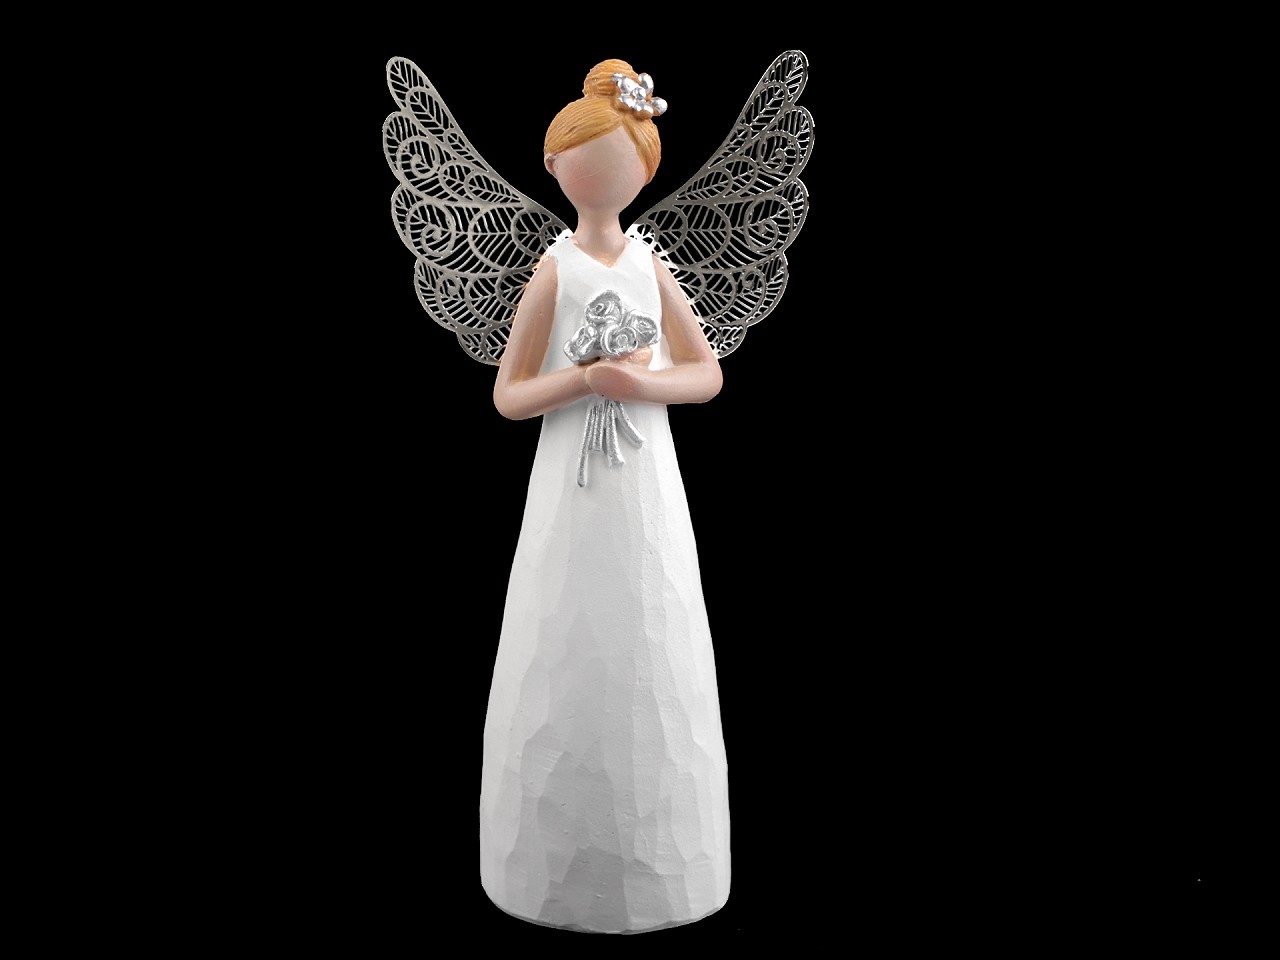 Textillux.sk - produkt Dekorácia anjel s filigránovými krídlami